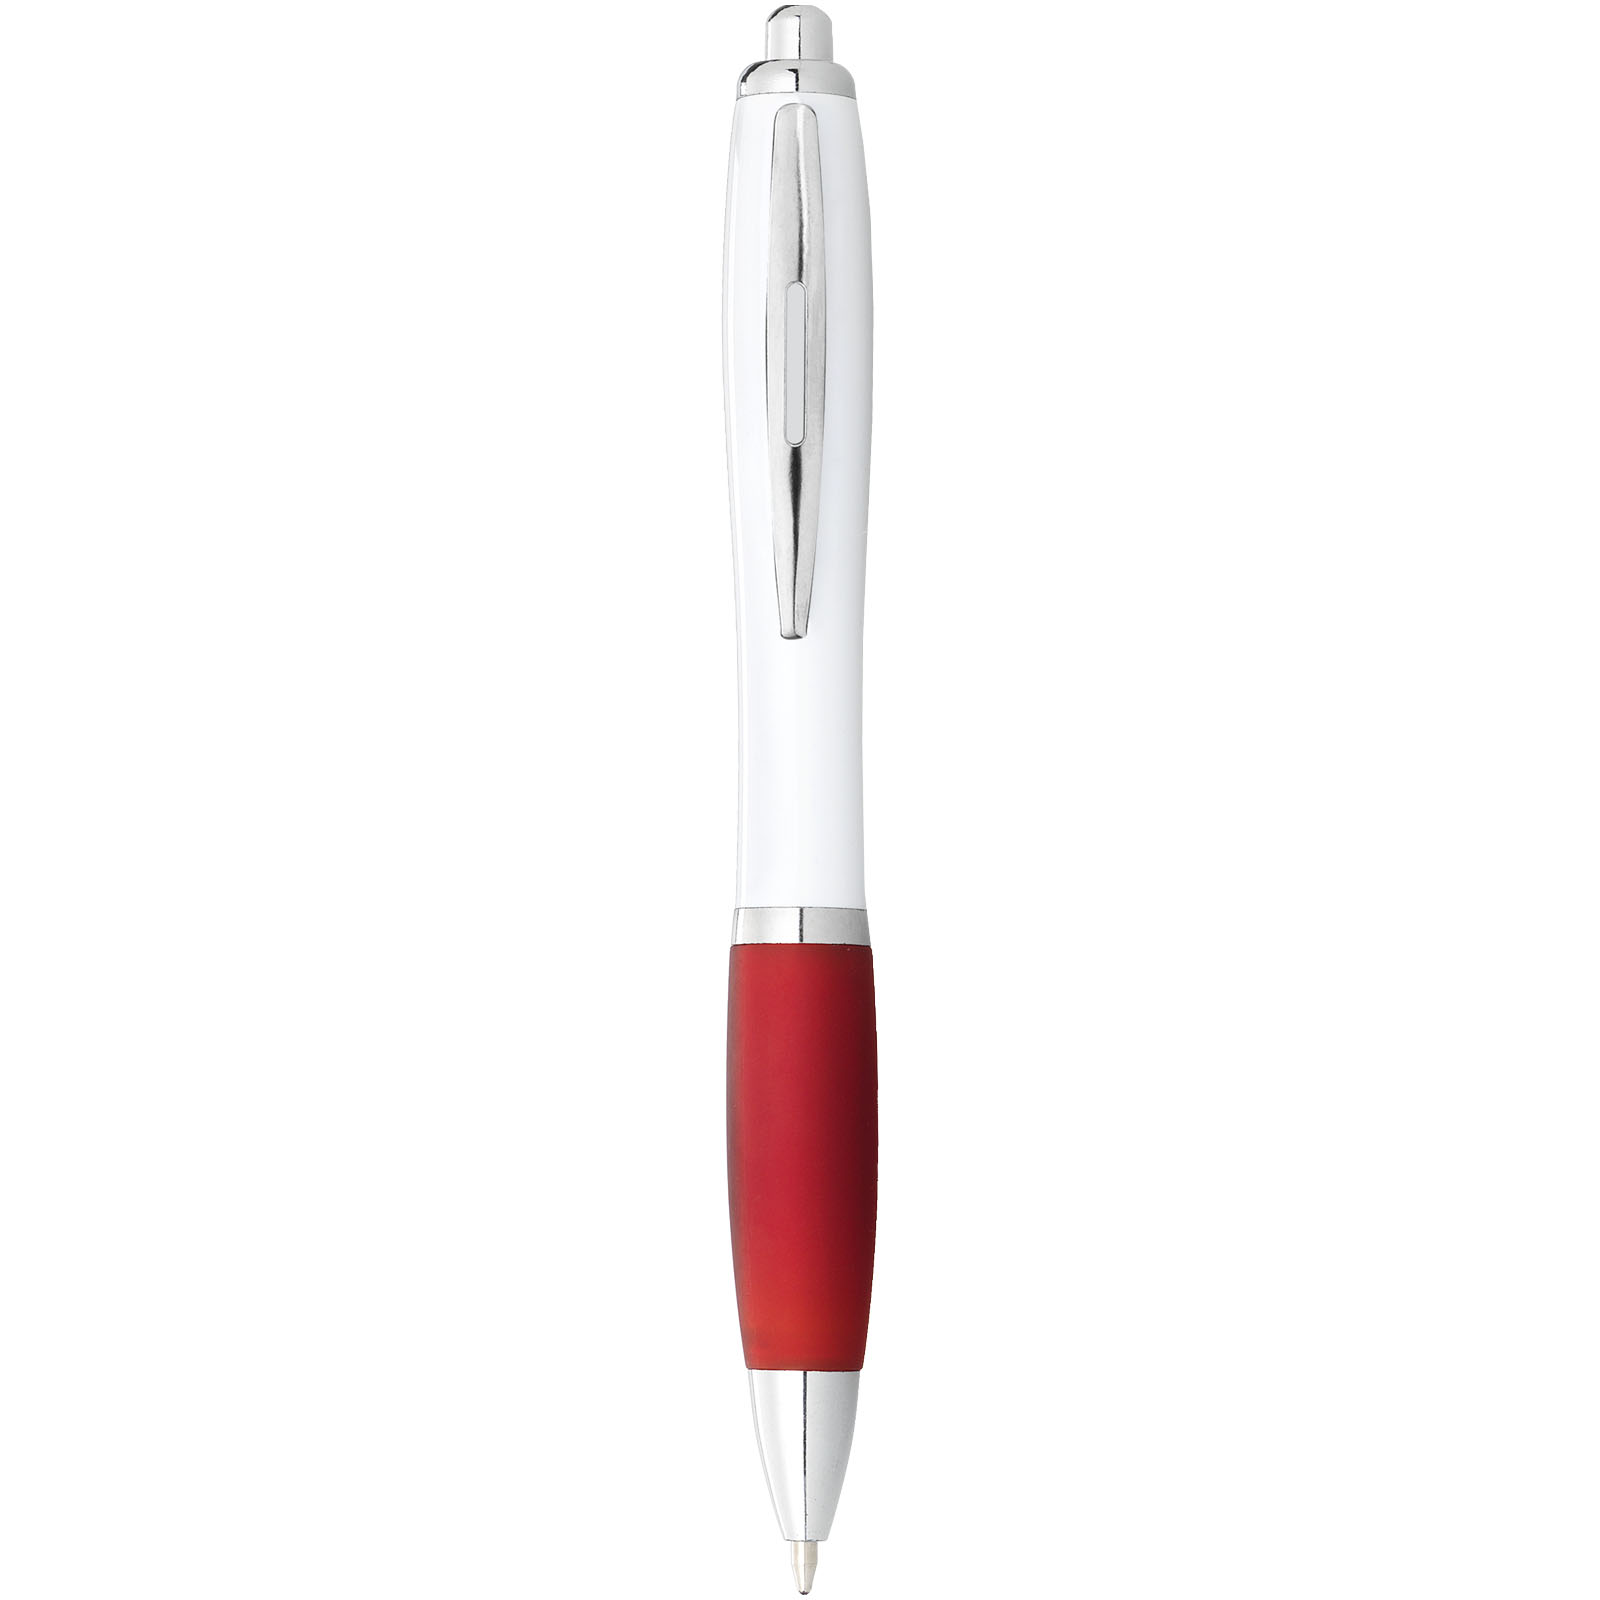 Nash Kugelschreiber weiß mit farbigem Griff